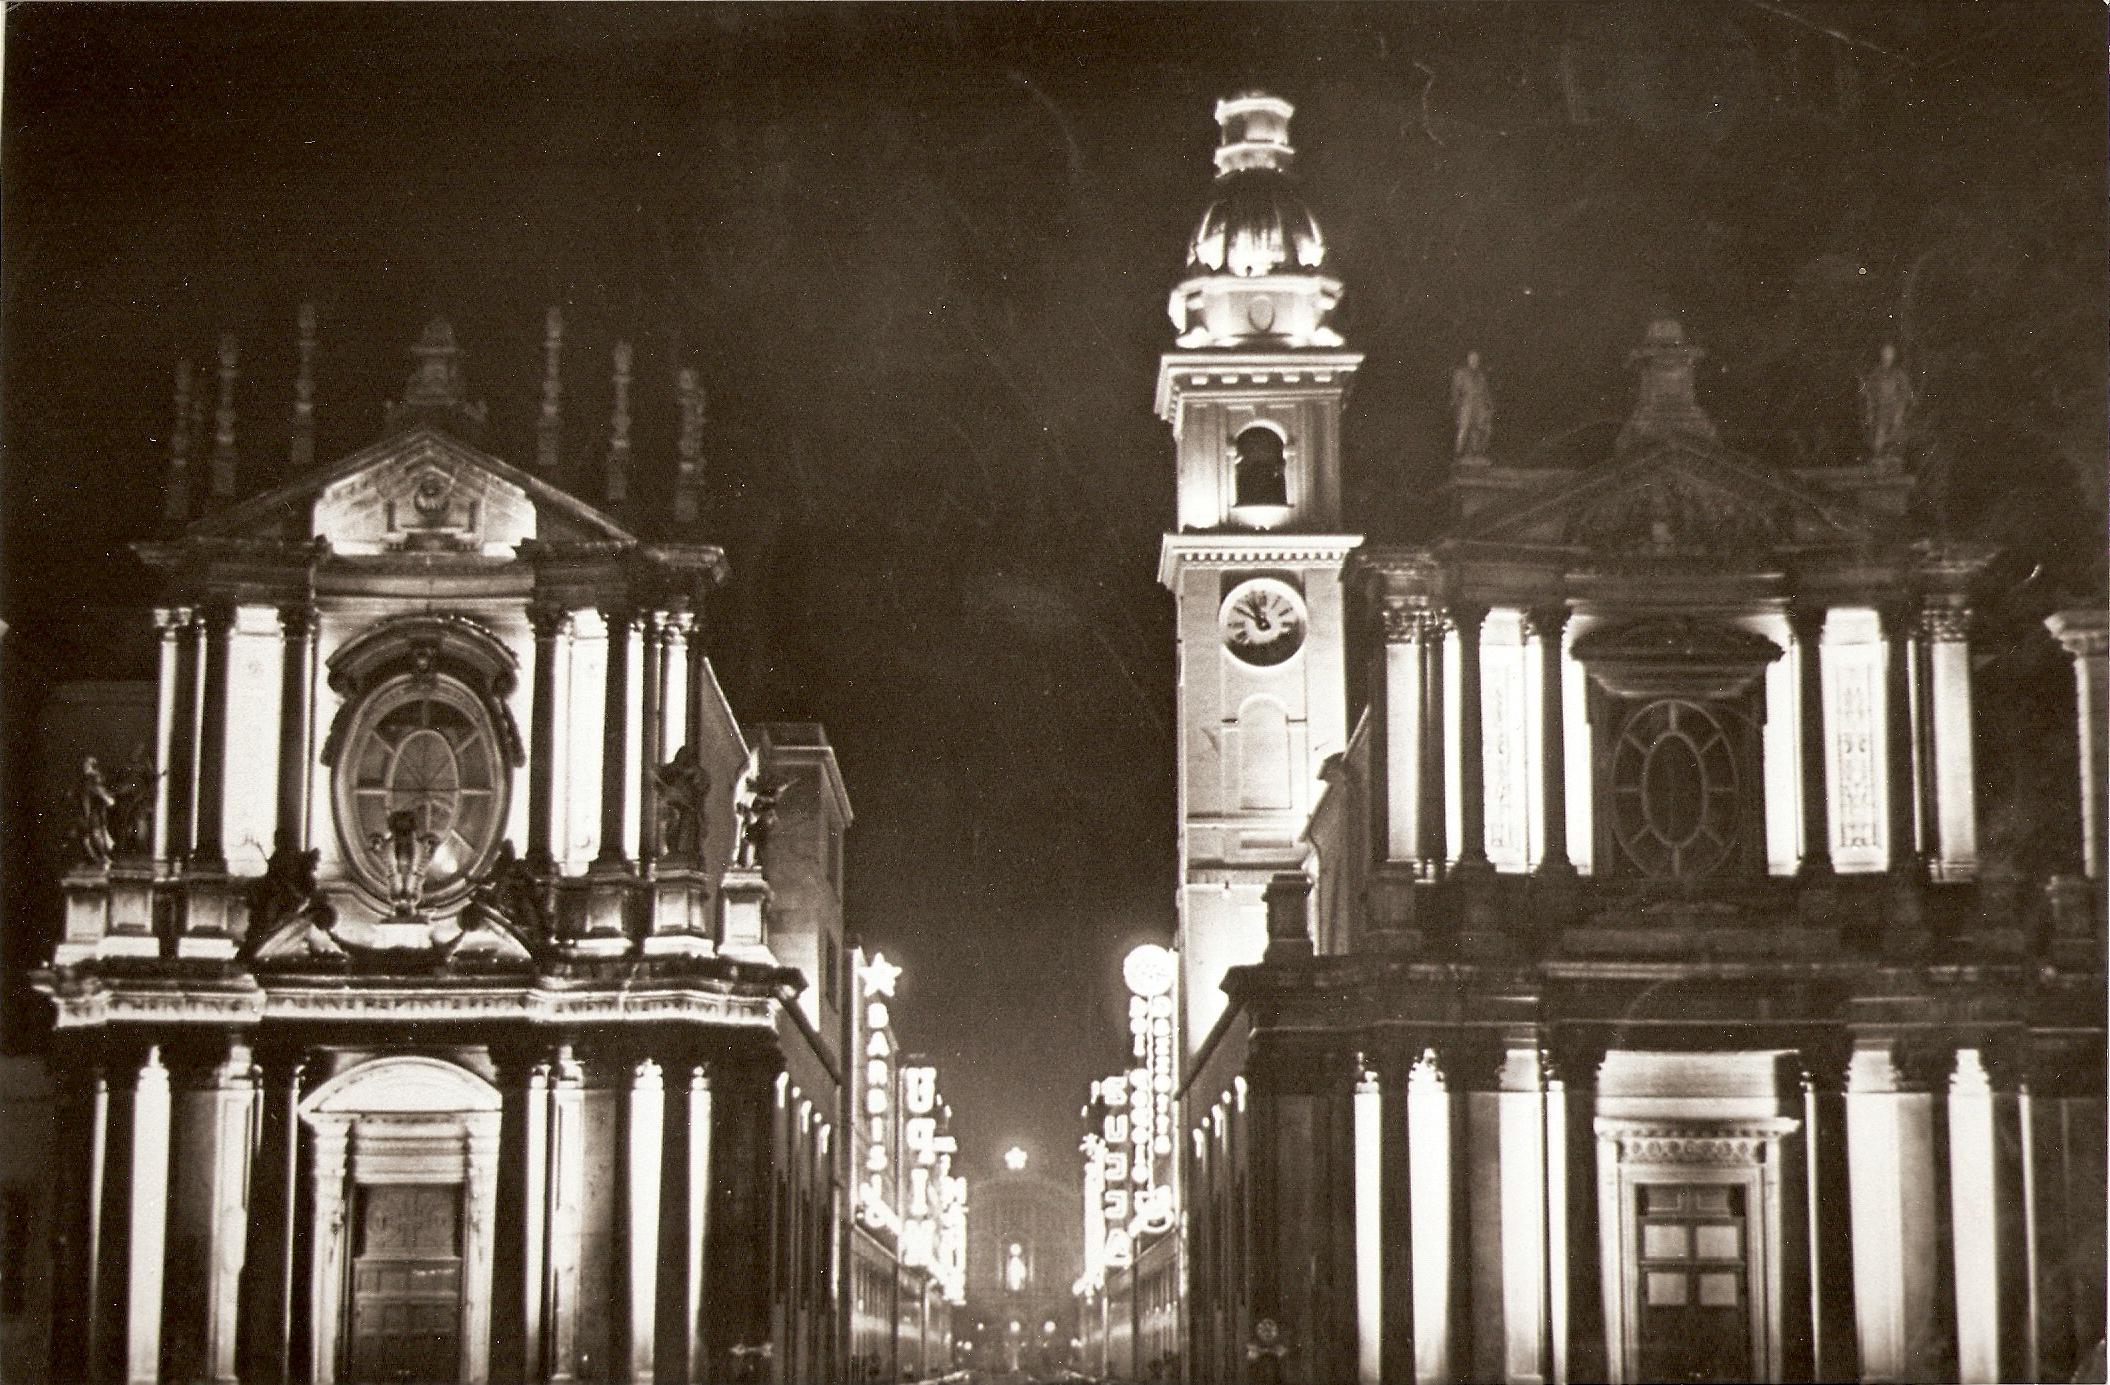 Illuminazione delle chiese gemelle @ Piazza San Carlo